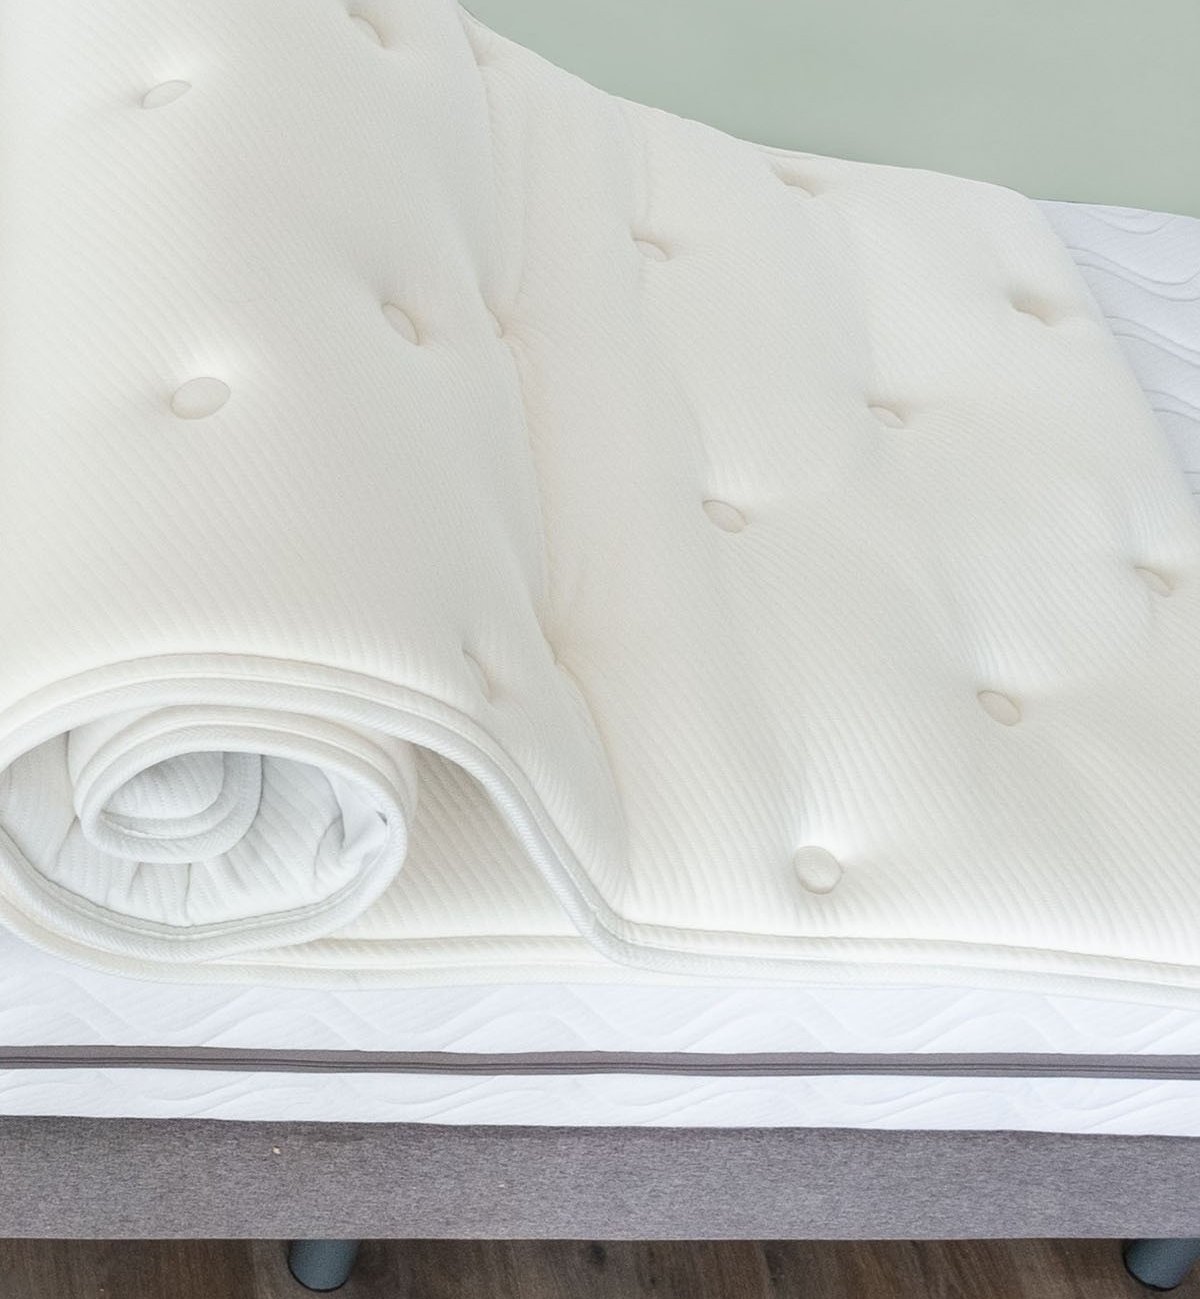 Natura" two-person latex mattress topper